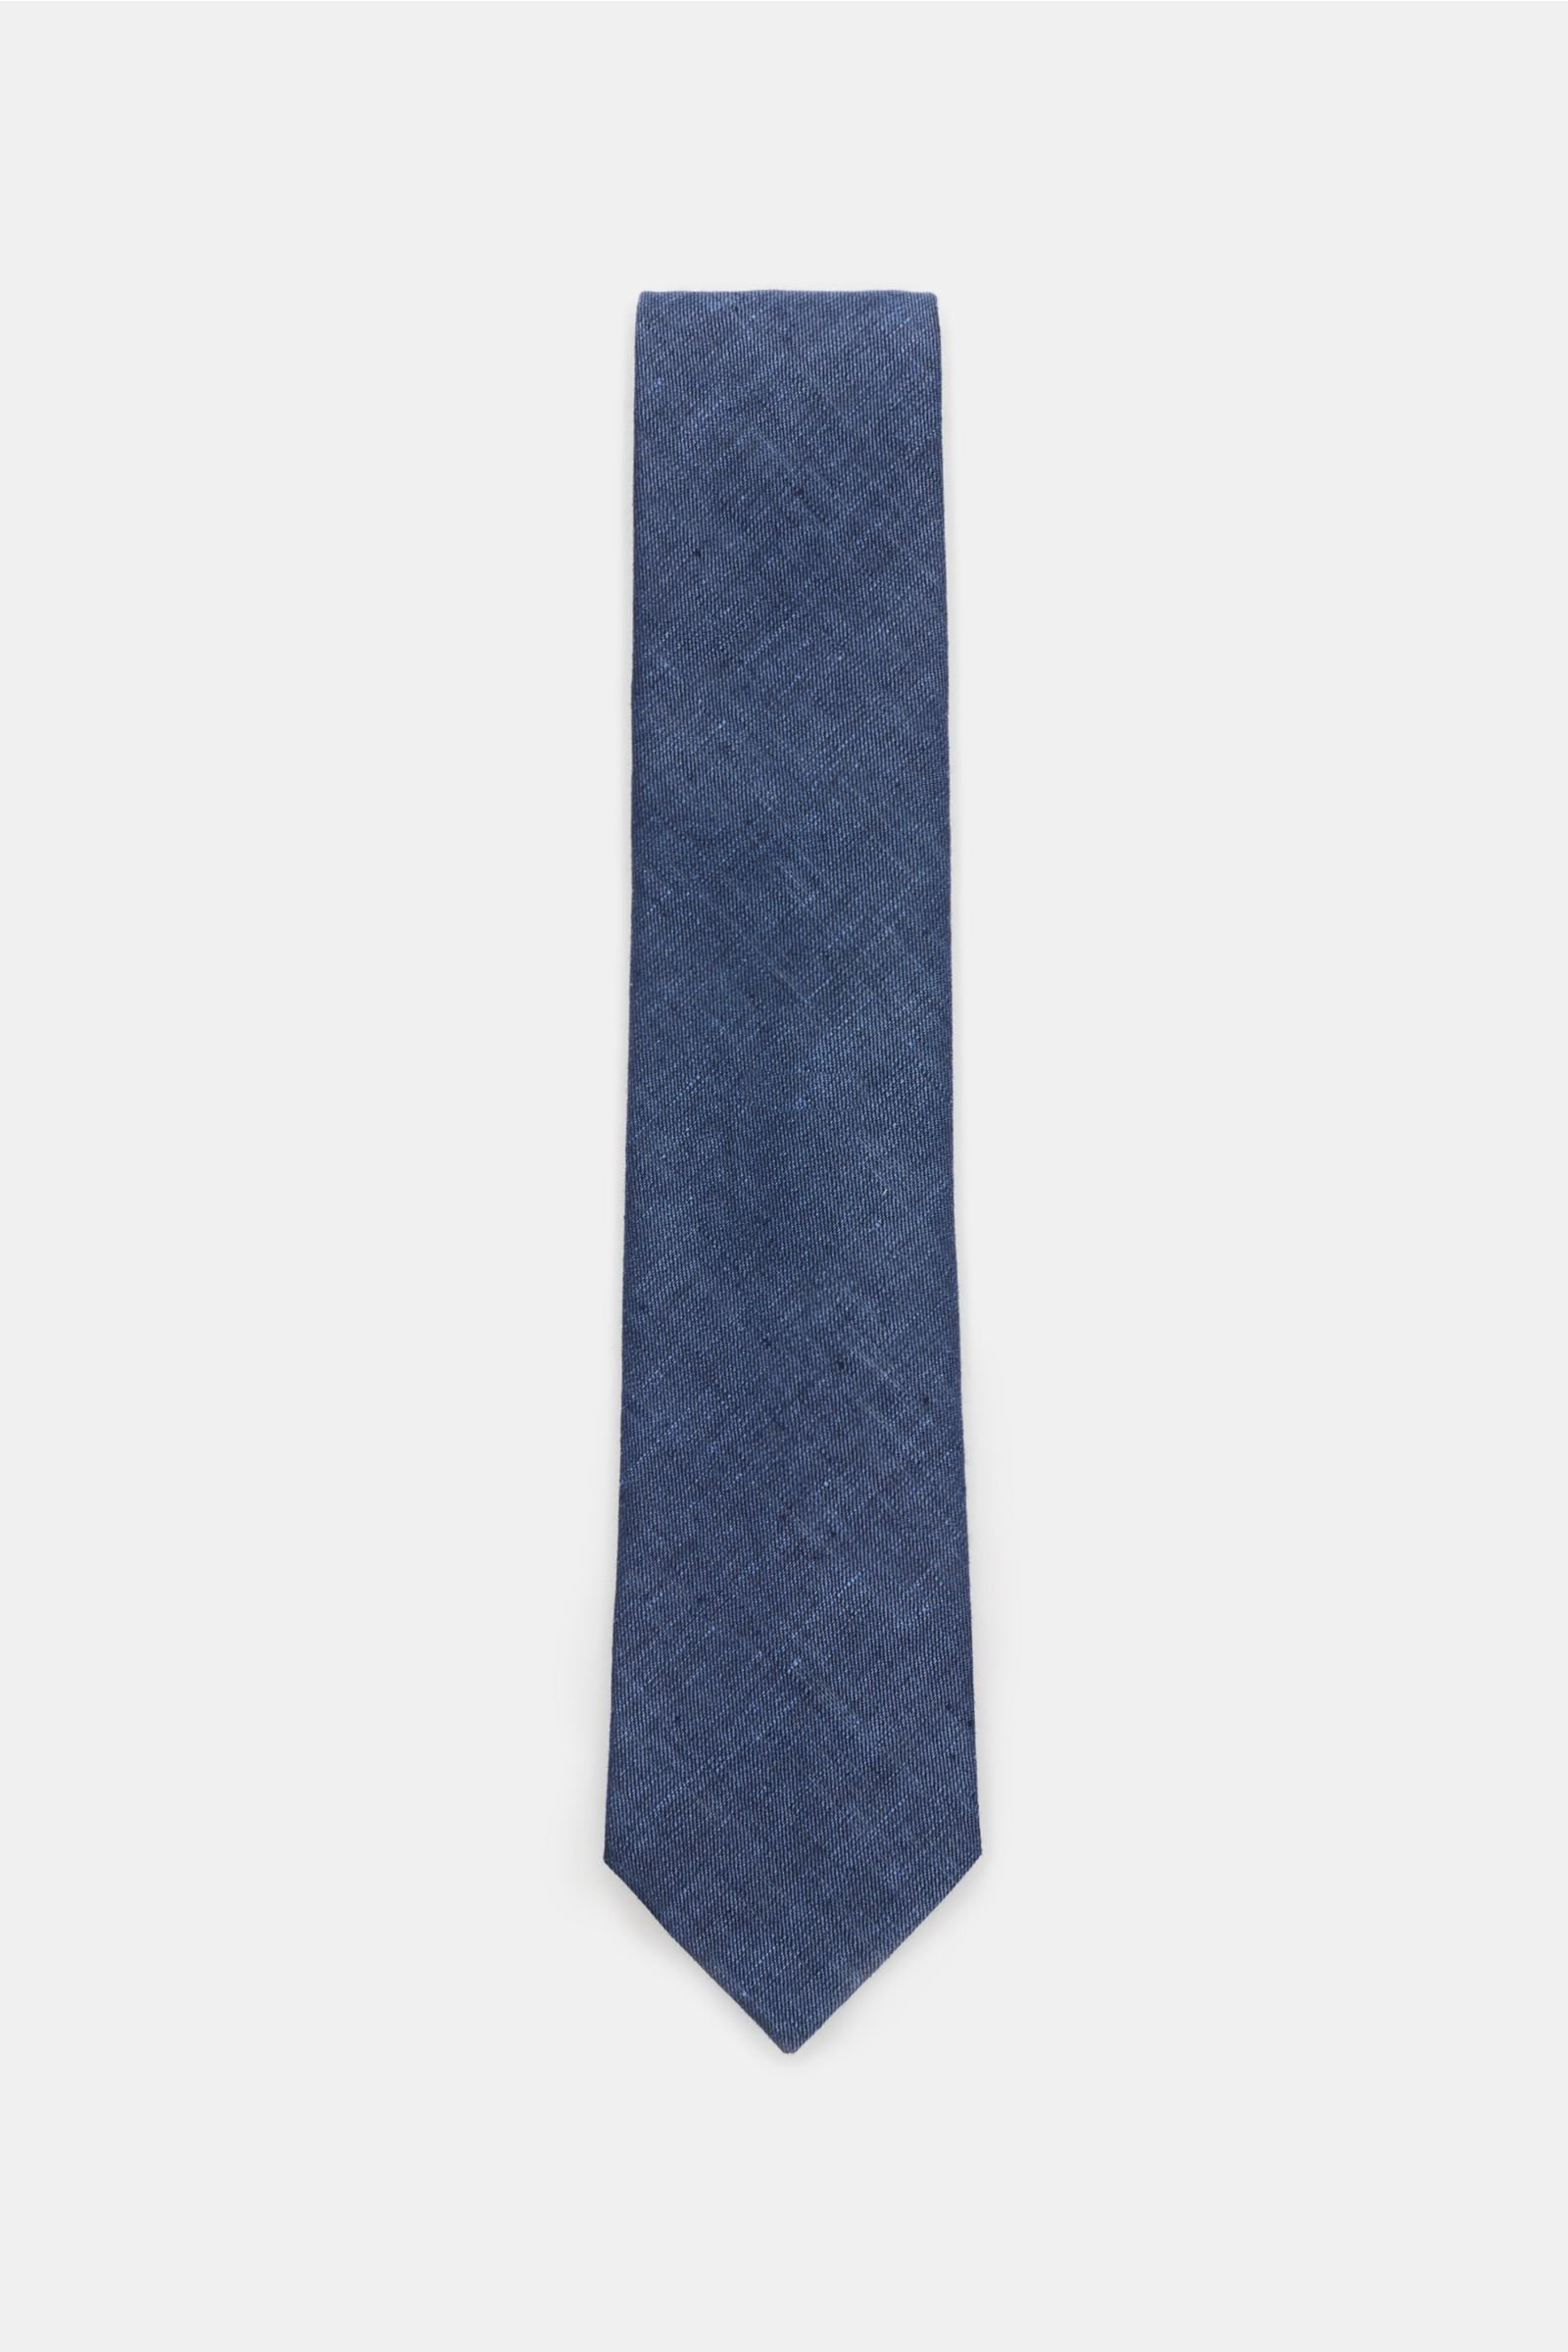 Linen tie grey-blue